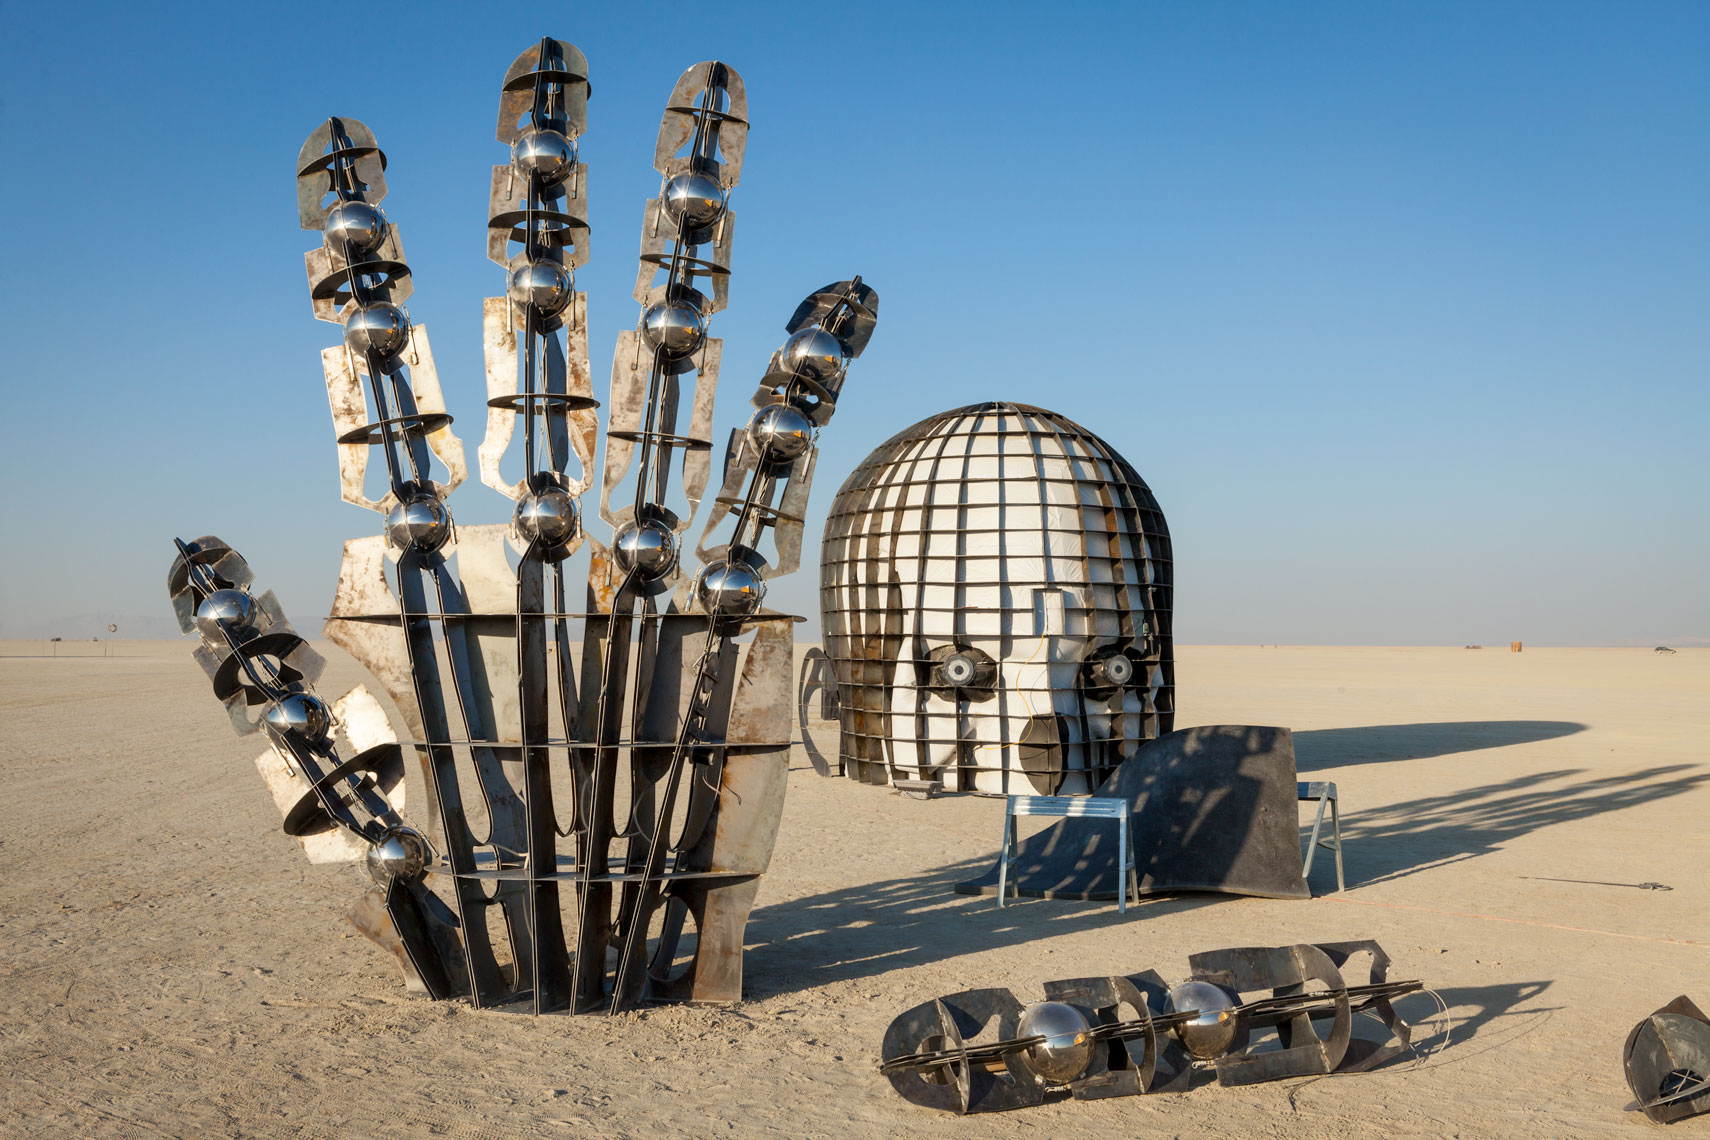 Awakening at Burning Man 2016